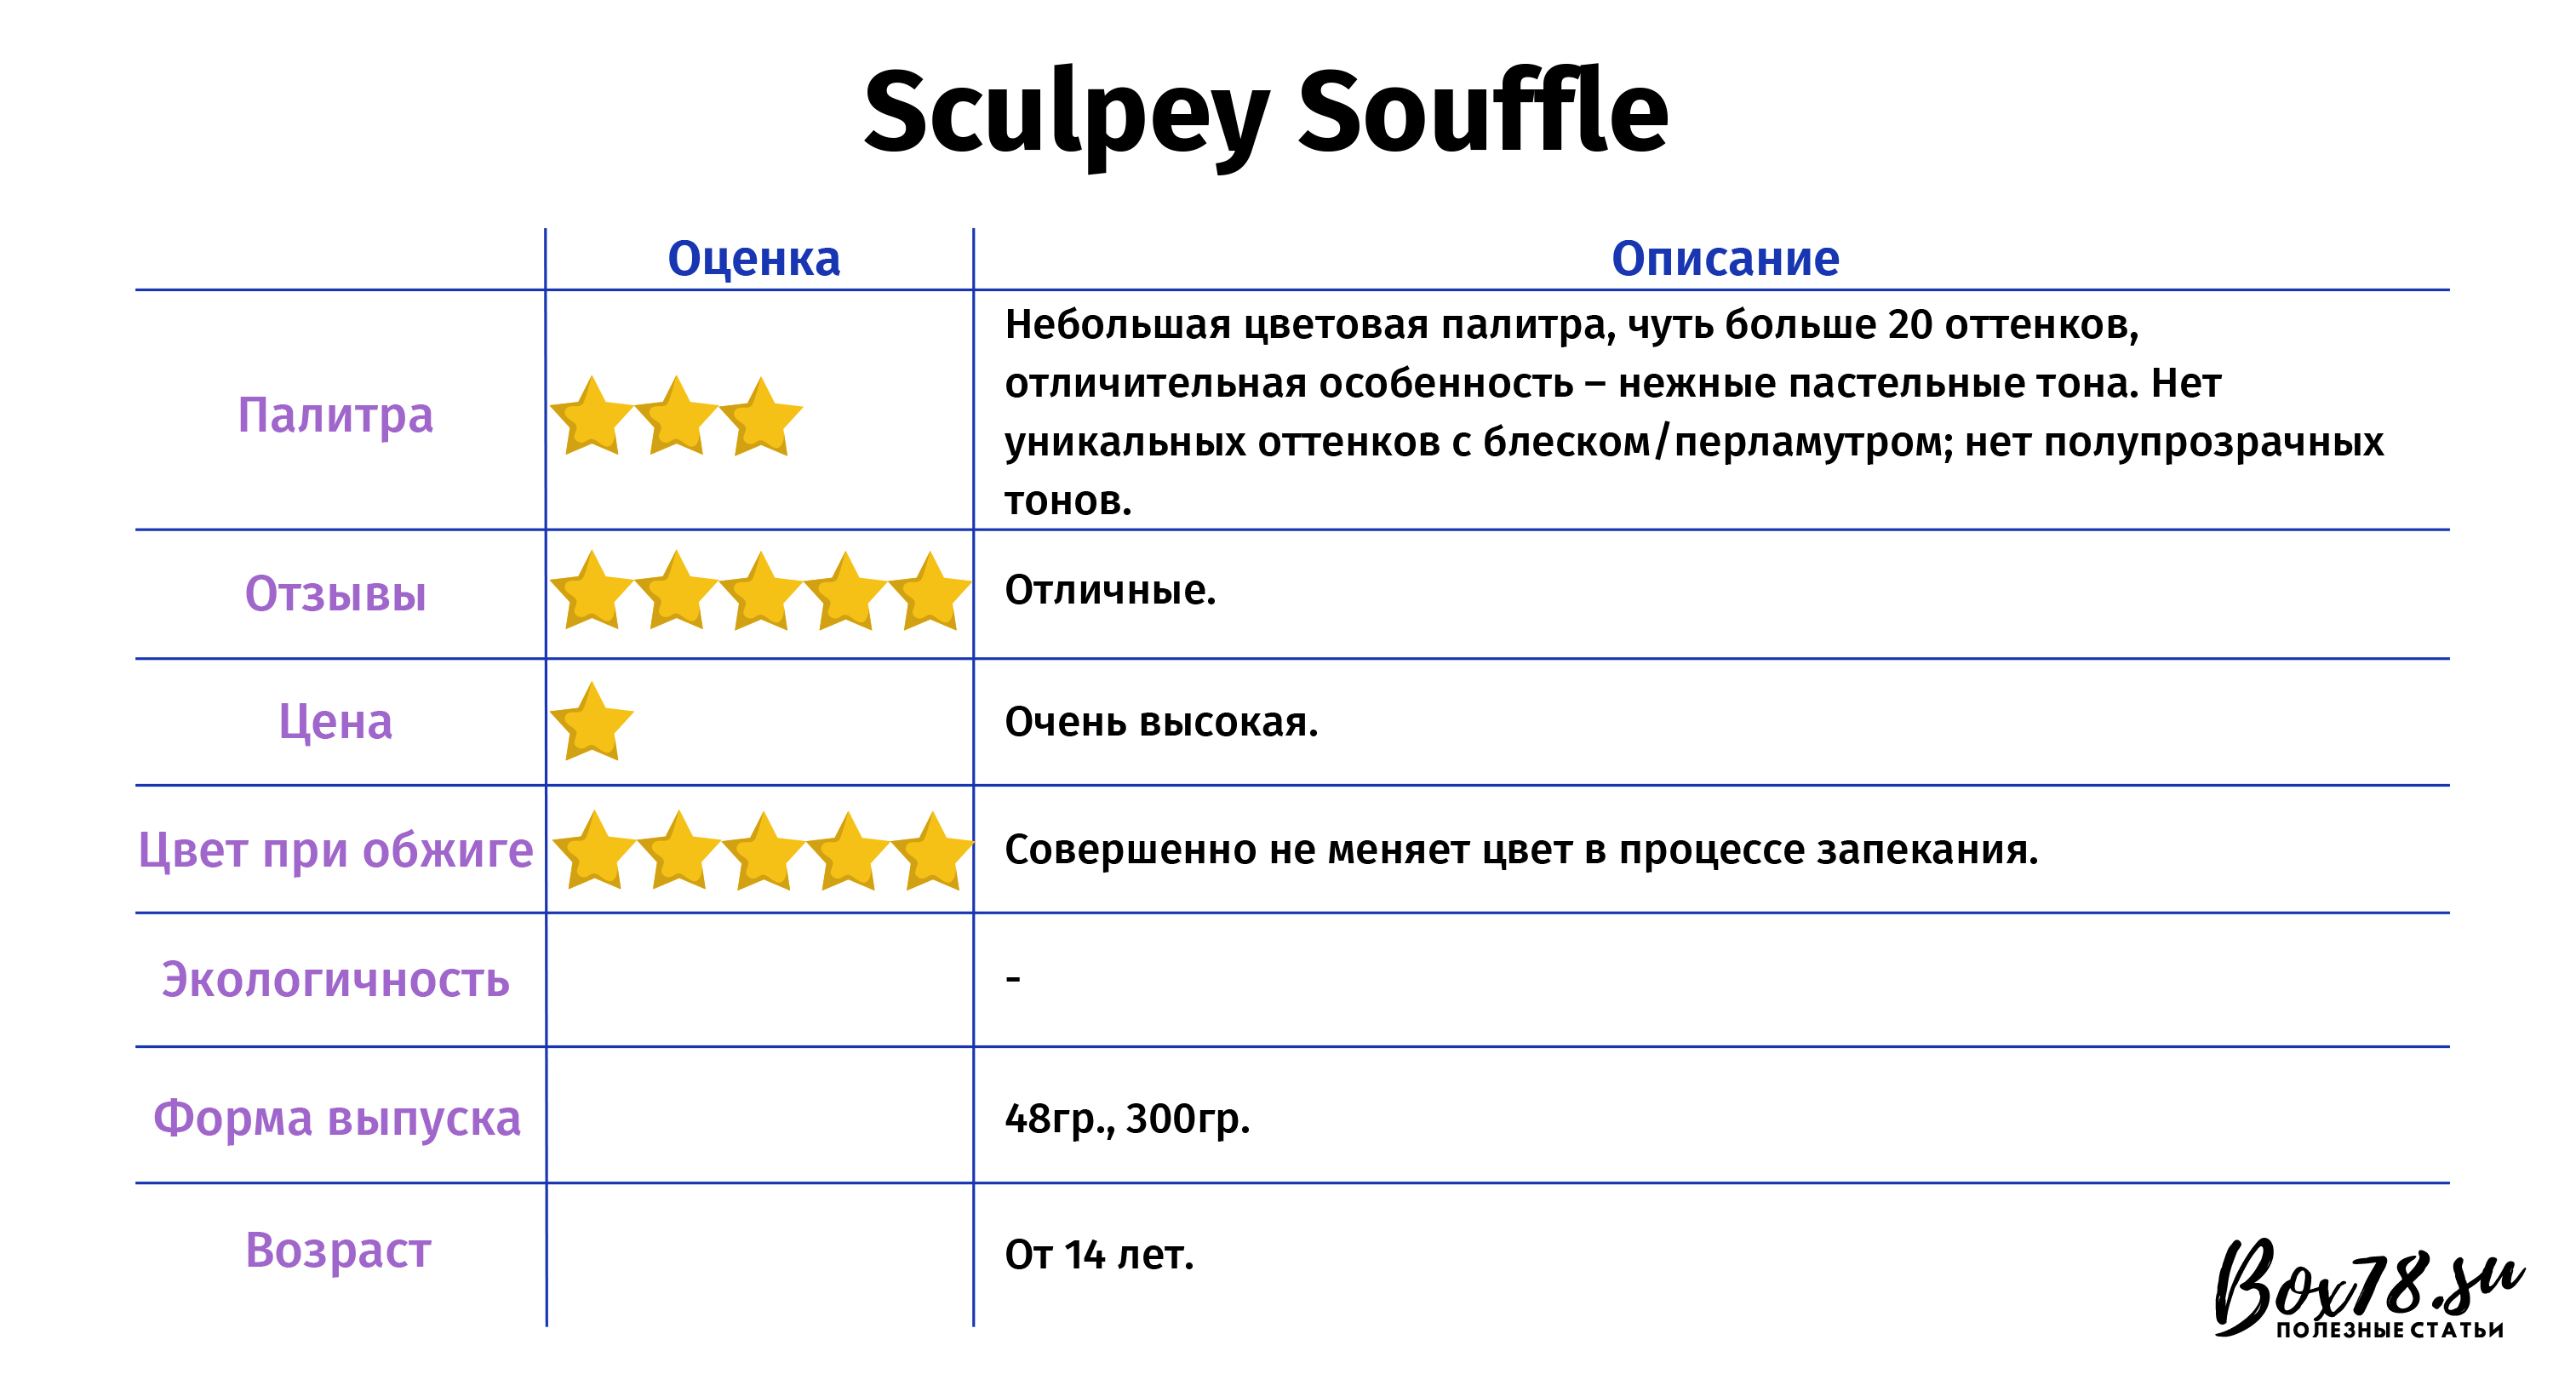 Sculpey Souffle.jpg